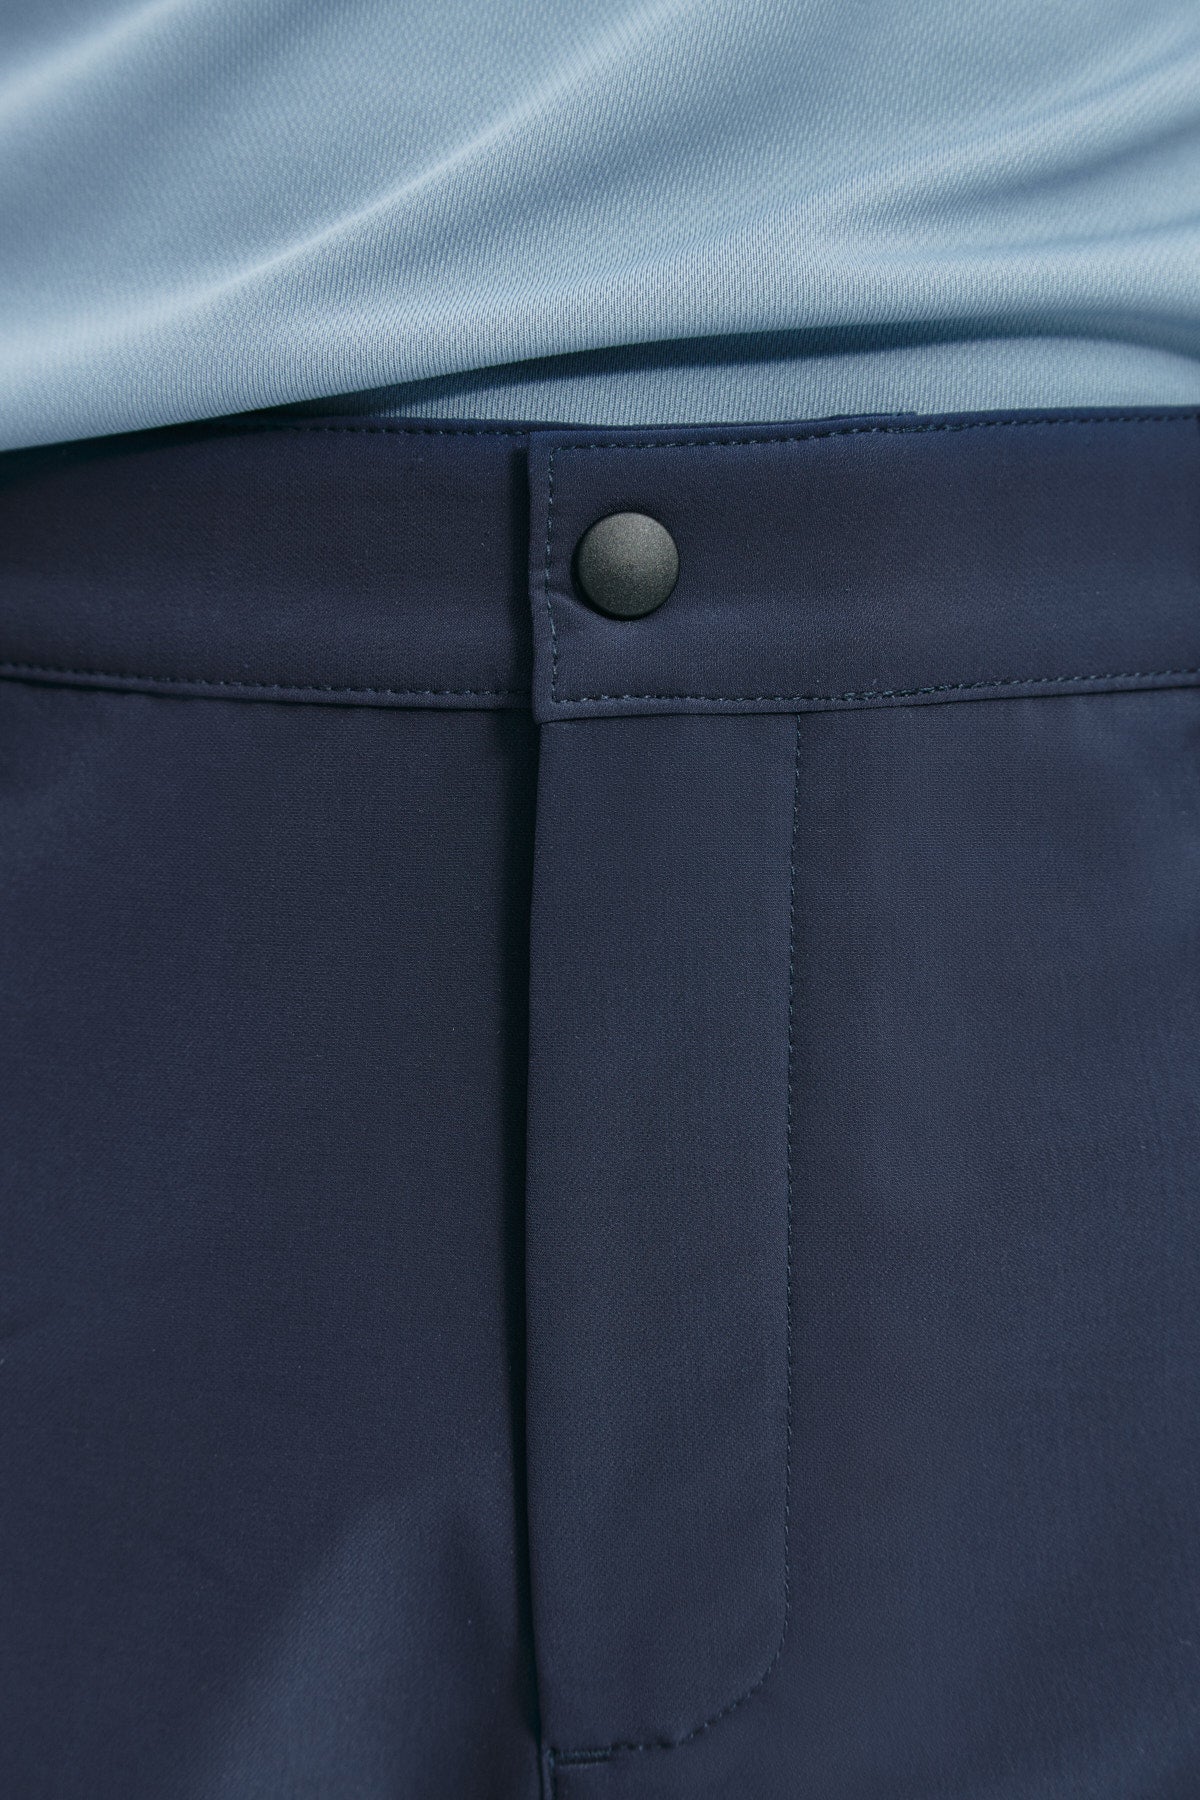 Pantalón chino regular azul marino para hombre con tecnología termorreguladora Coolmax. Foto detalle